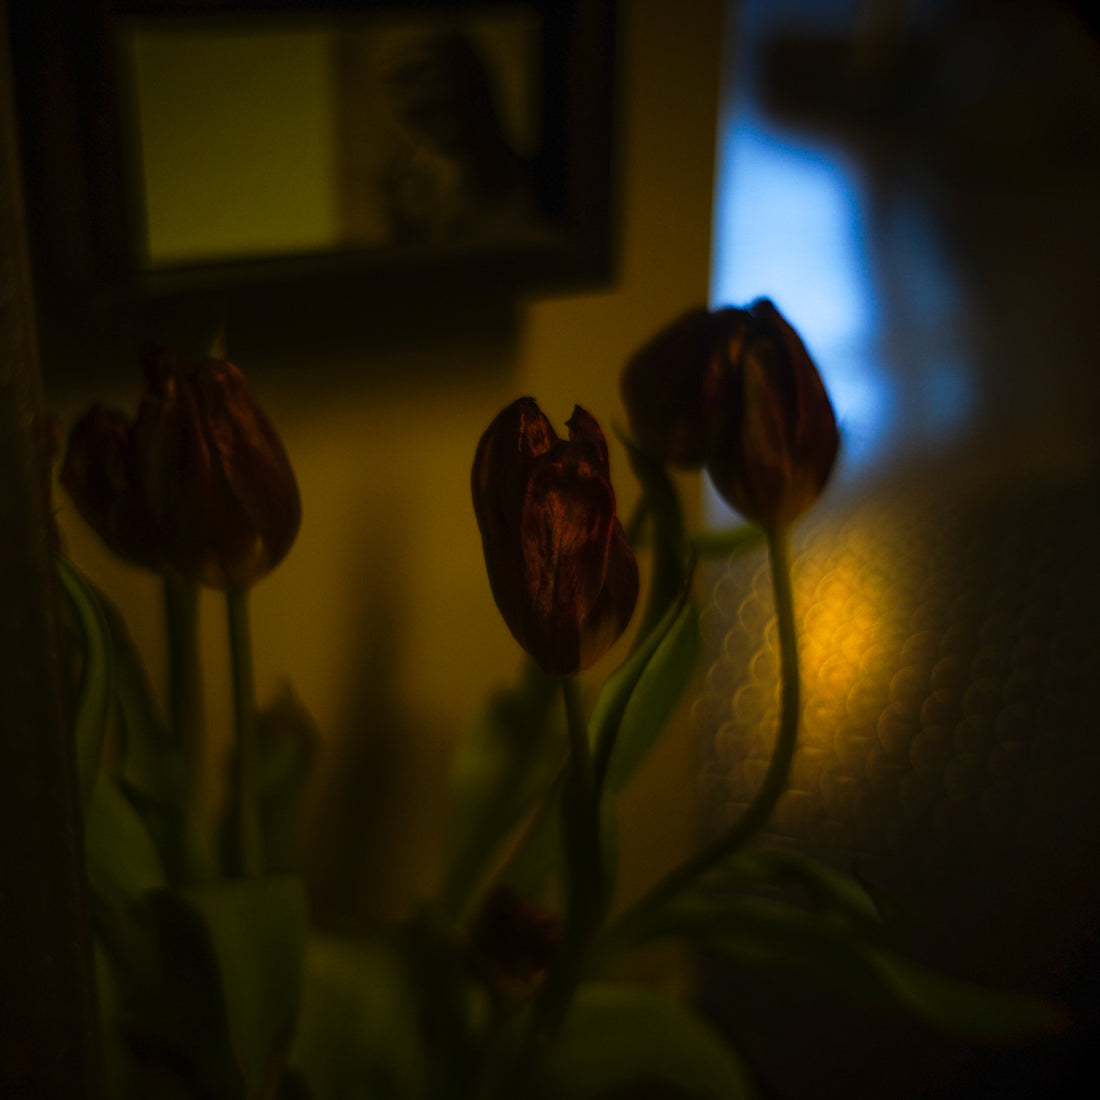 April 27, 2019 (tulip)